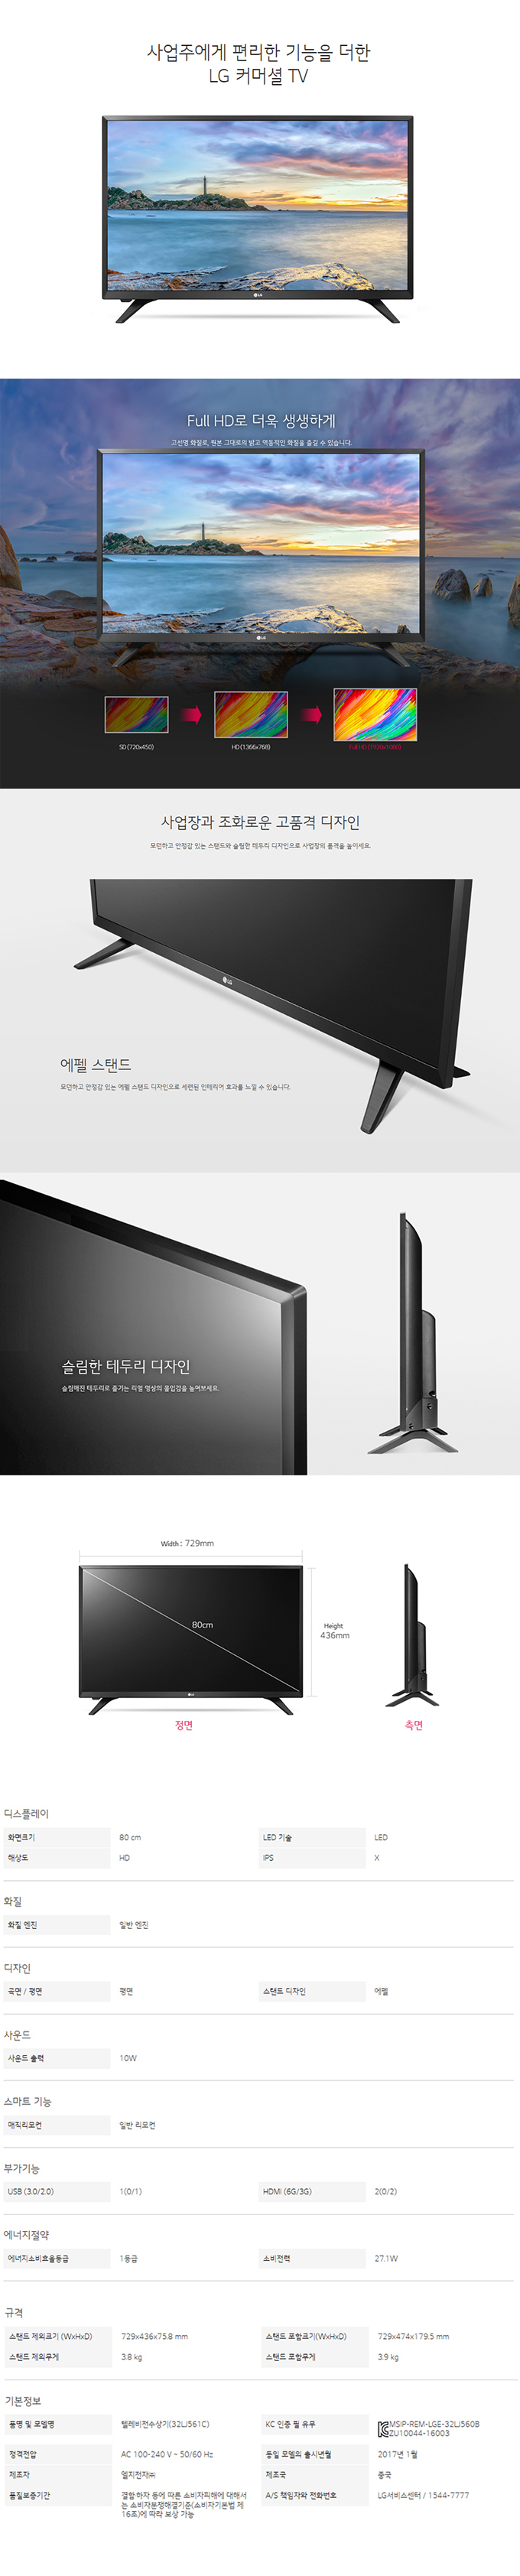 중랑케이블 - LG 32인치 LED TV (32LK561C) 상세보기